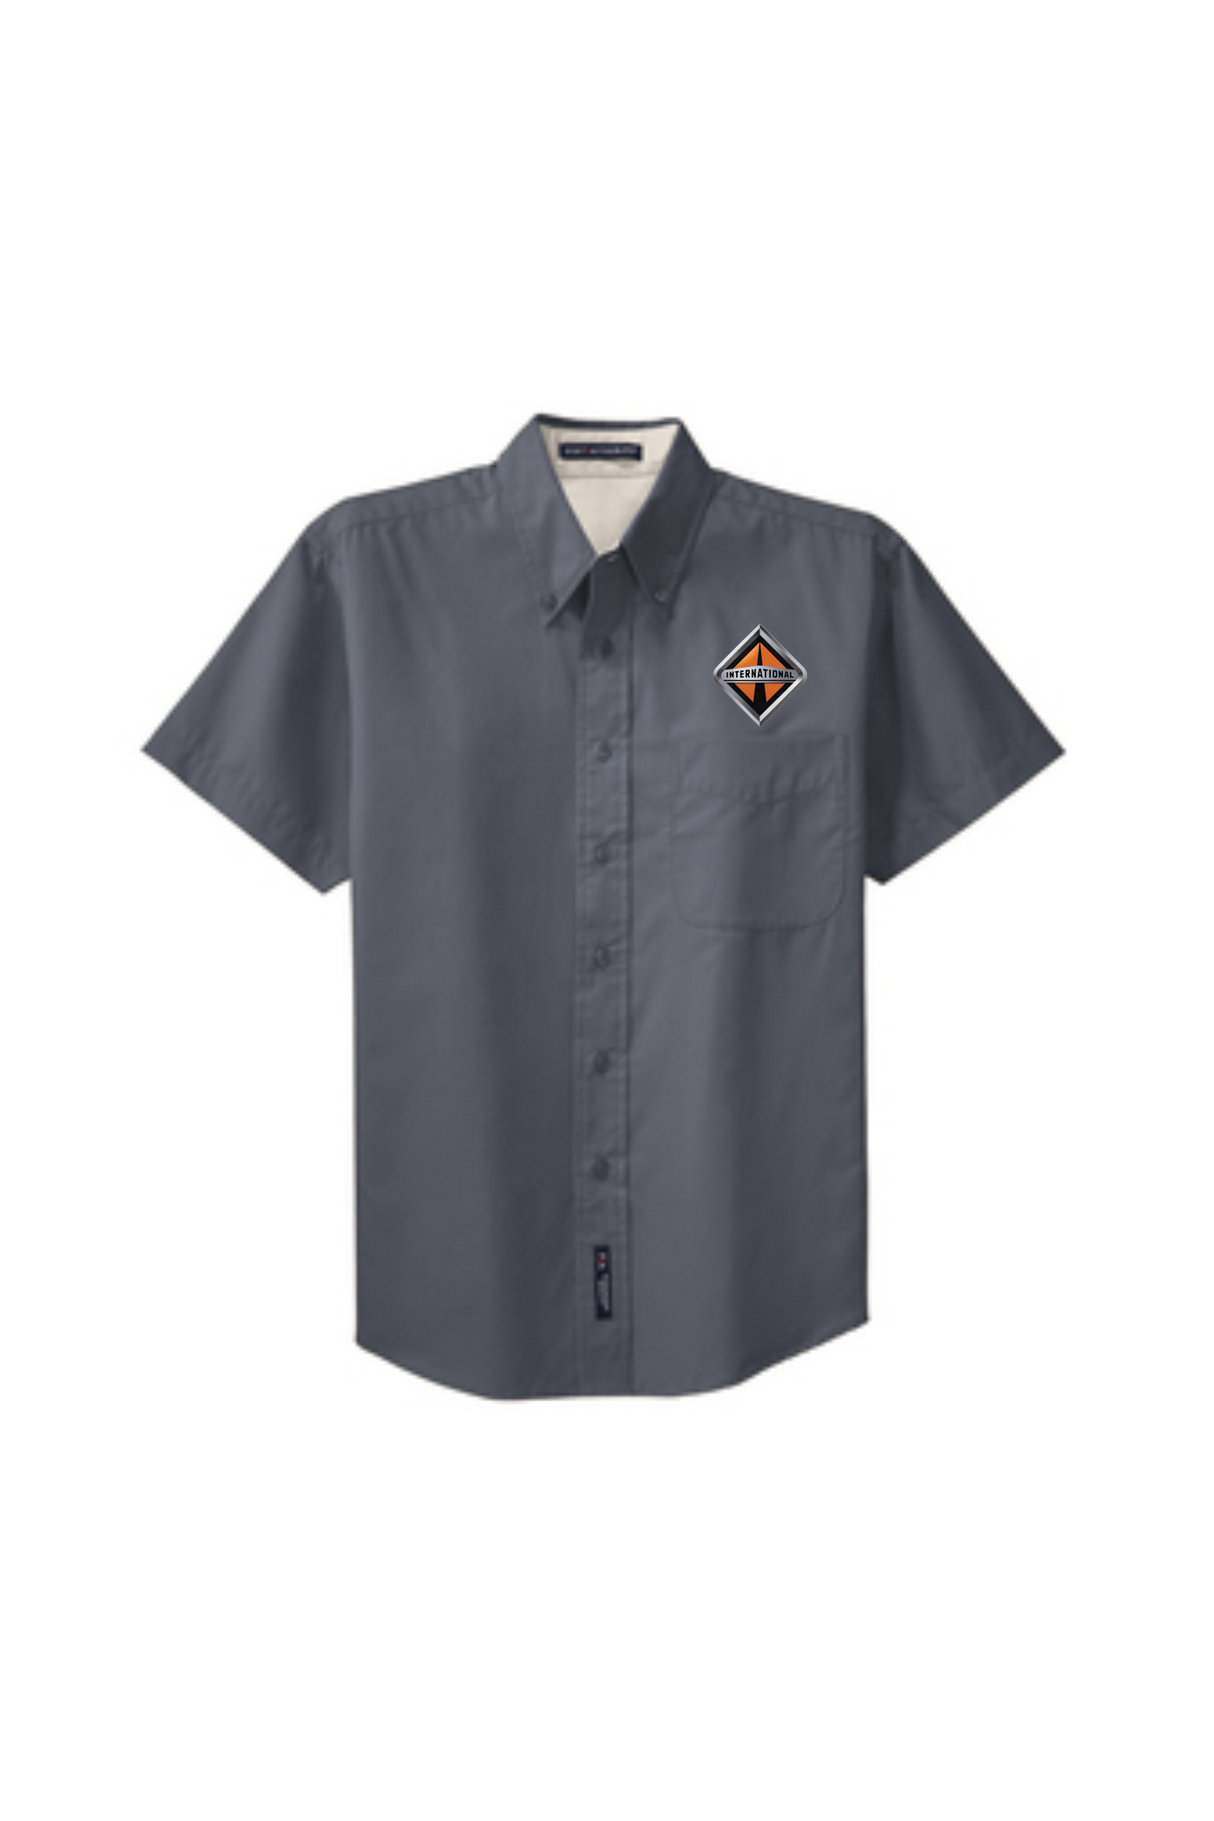 Border International Diamond Logo Easy Care Full-Button Shirt